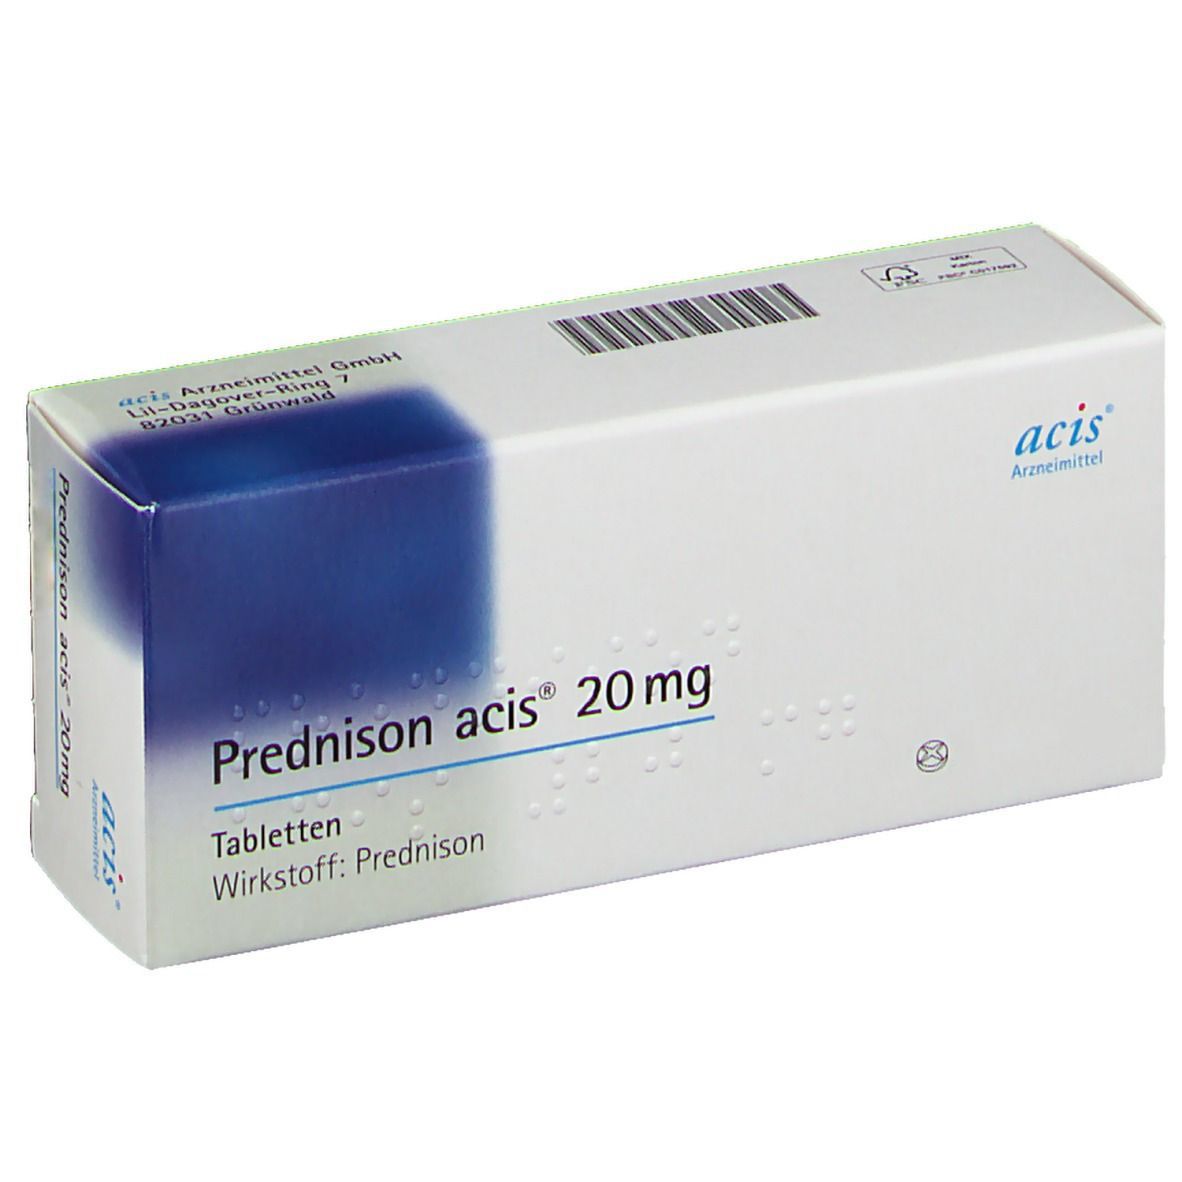 Prednison acis® 20Mg